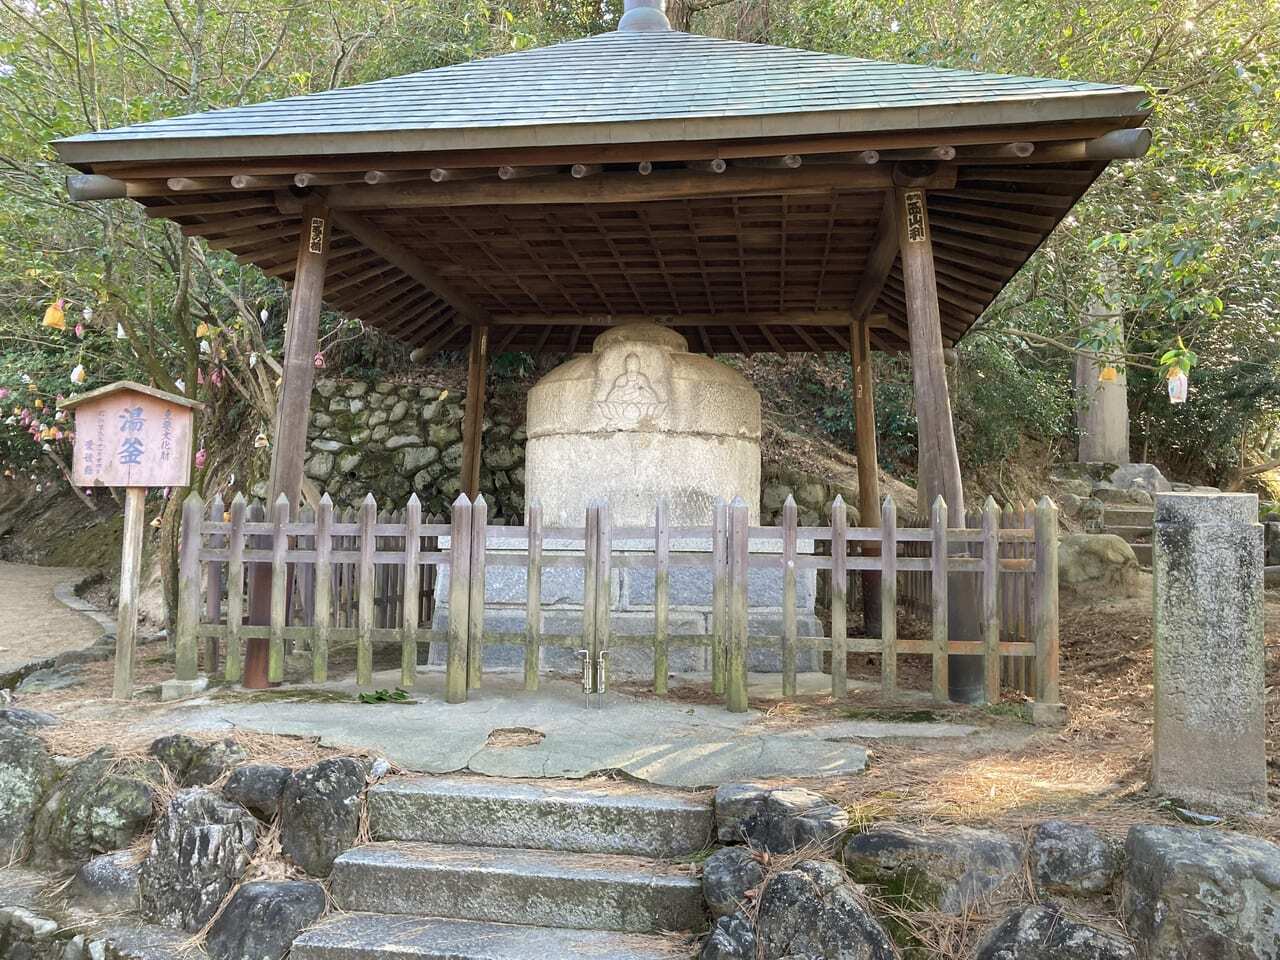 愛媛県の指定有形文化財に指定されている石造の湯釜